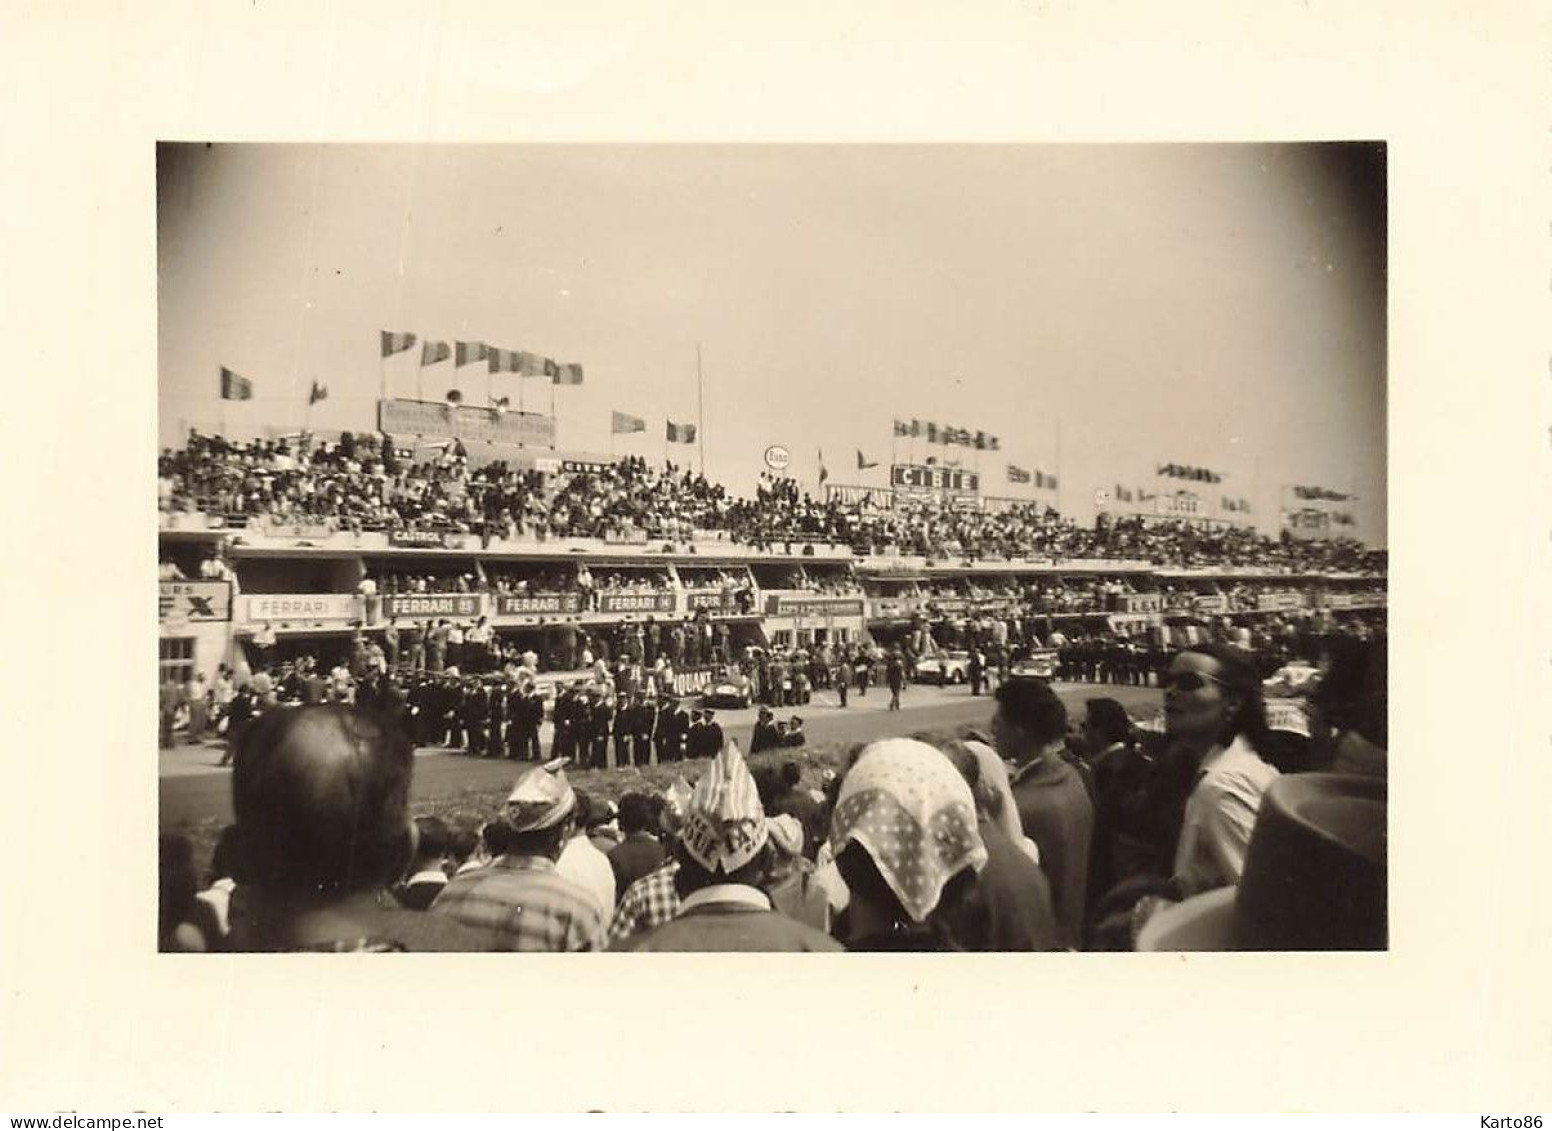 24heures Du Mans 1954 * 8 Photos Anciennes * Voiture De Course Pilotes Automobiles Circuit * Course 24H * 10.4x7.5cm - Le Mans